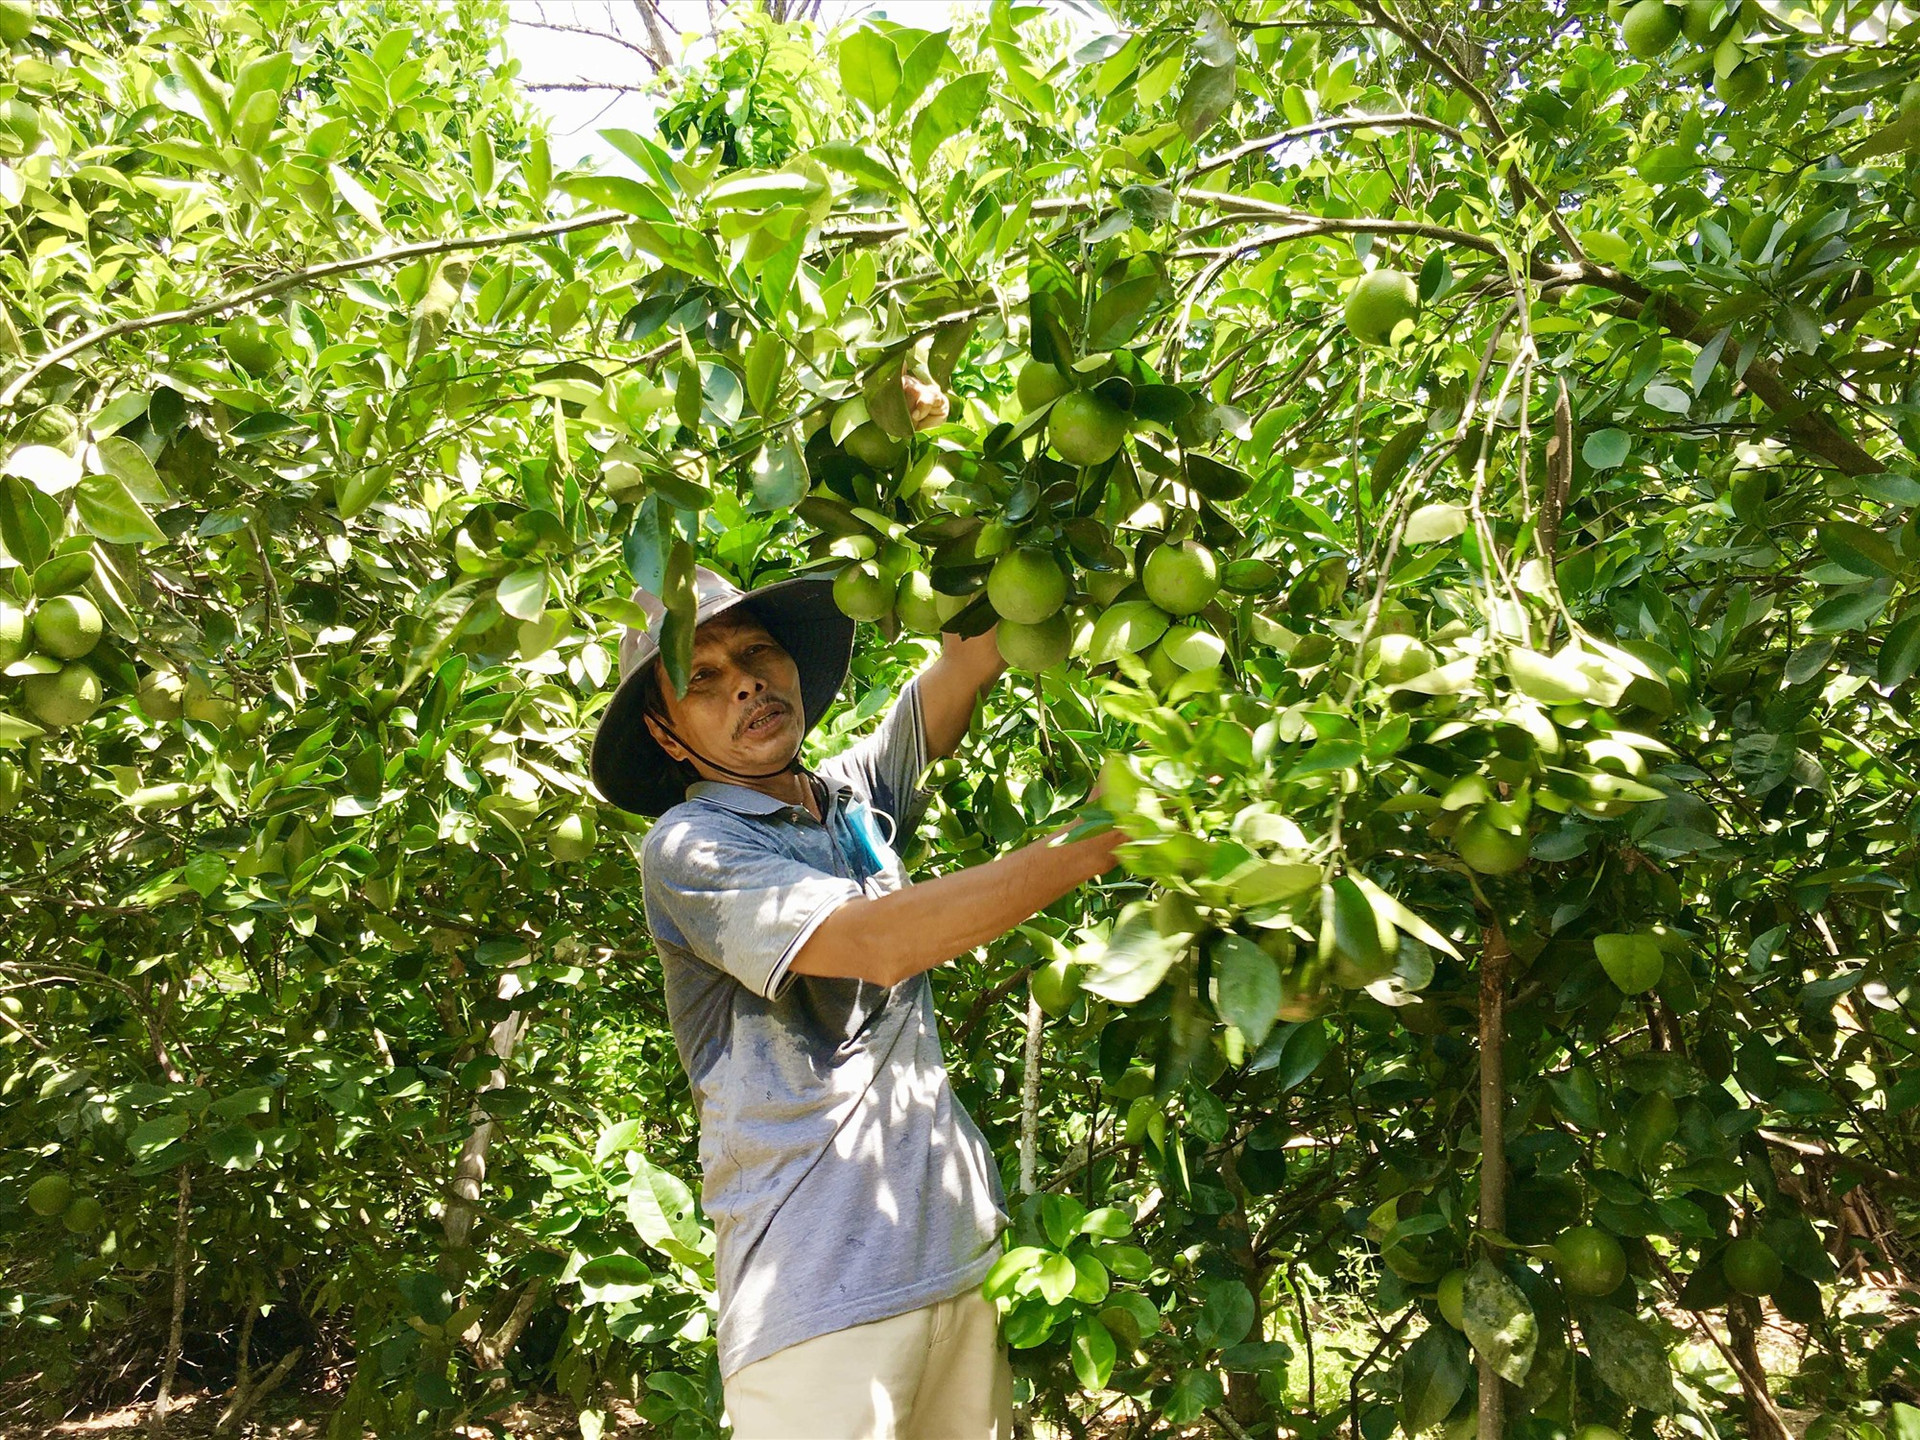 Nhờ áp dụng công nghệ tưới tiết kiệm nên vườn cây ăn quả của ông Nguyễn Quang Khánh (thôn Đại Bình, xã Quế Trung) cho hiệu quả kinh tế cao. Ảnh: LÊ THÔNG